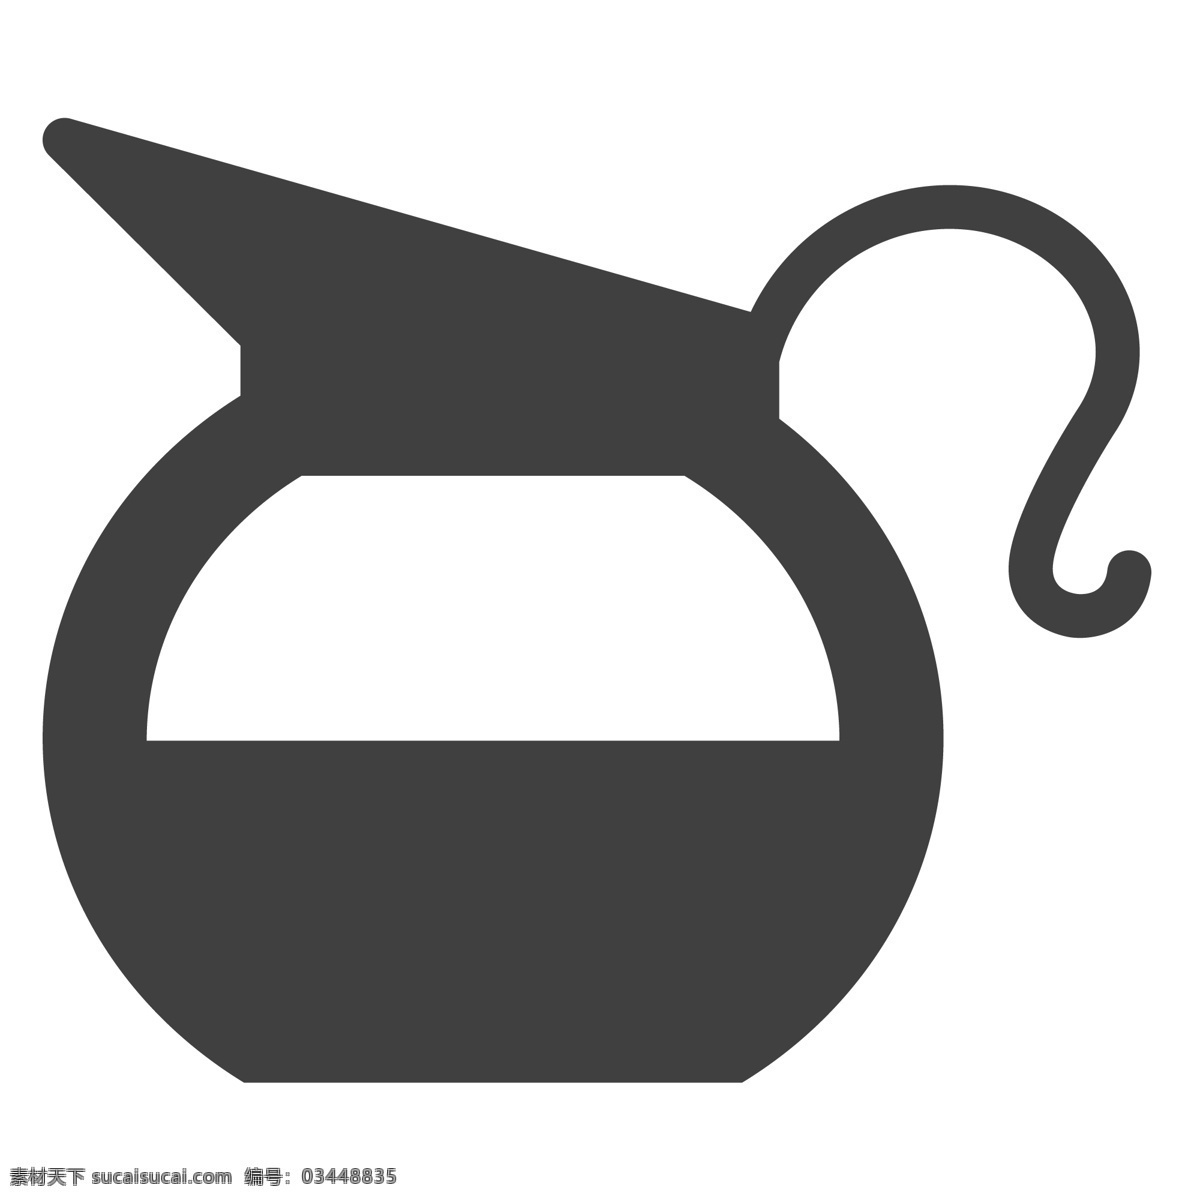 黑色 热 水壶 卡通 热水壶 生活图标 卡通图标 黑色的图标 手机图标 智能图标设计